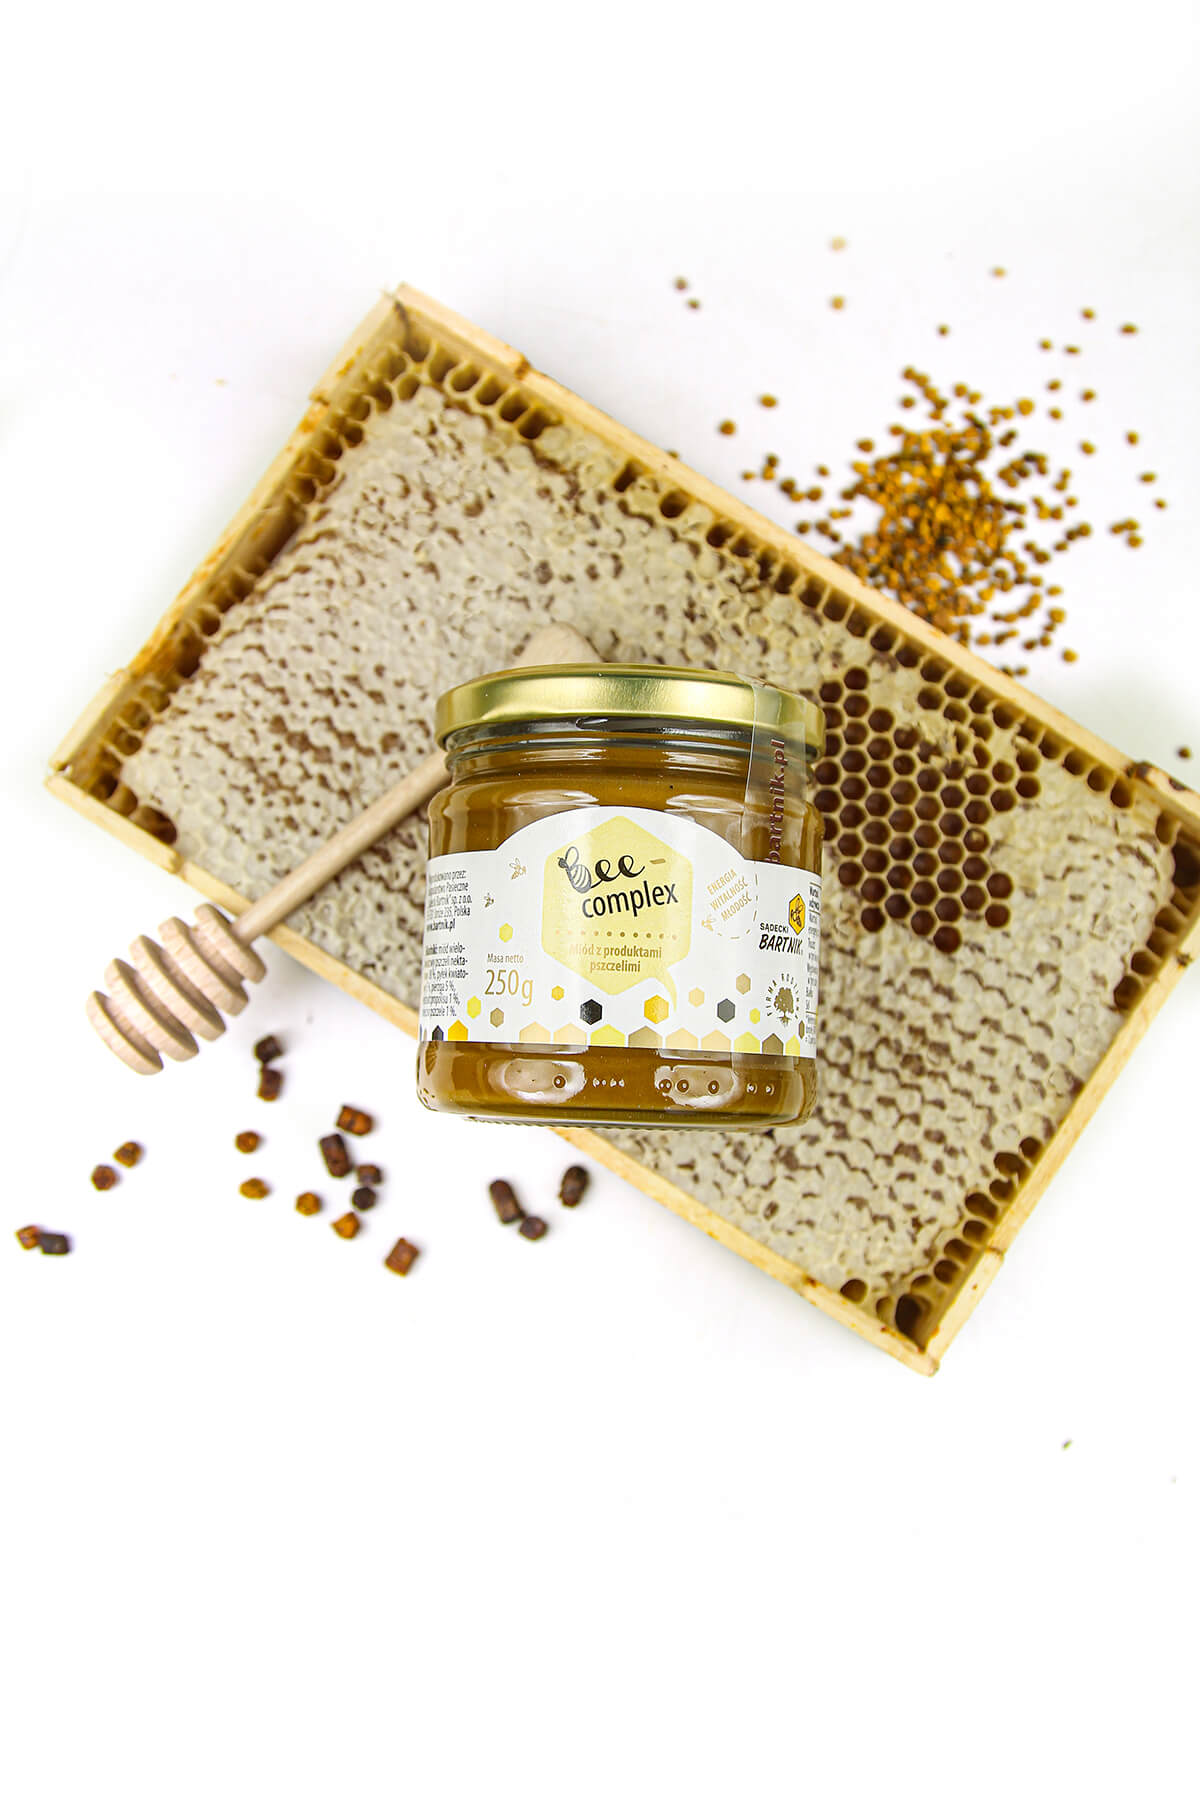 Bee complex (miód z produktami pszczelimi) 250 g - Sądecki Bartnik